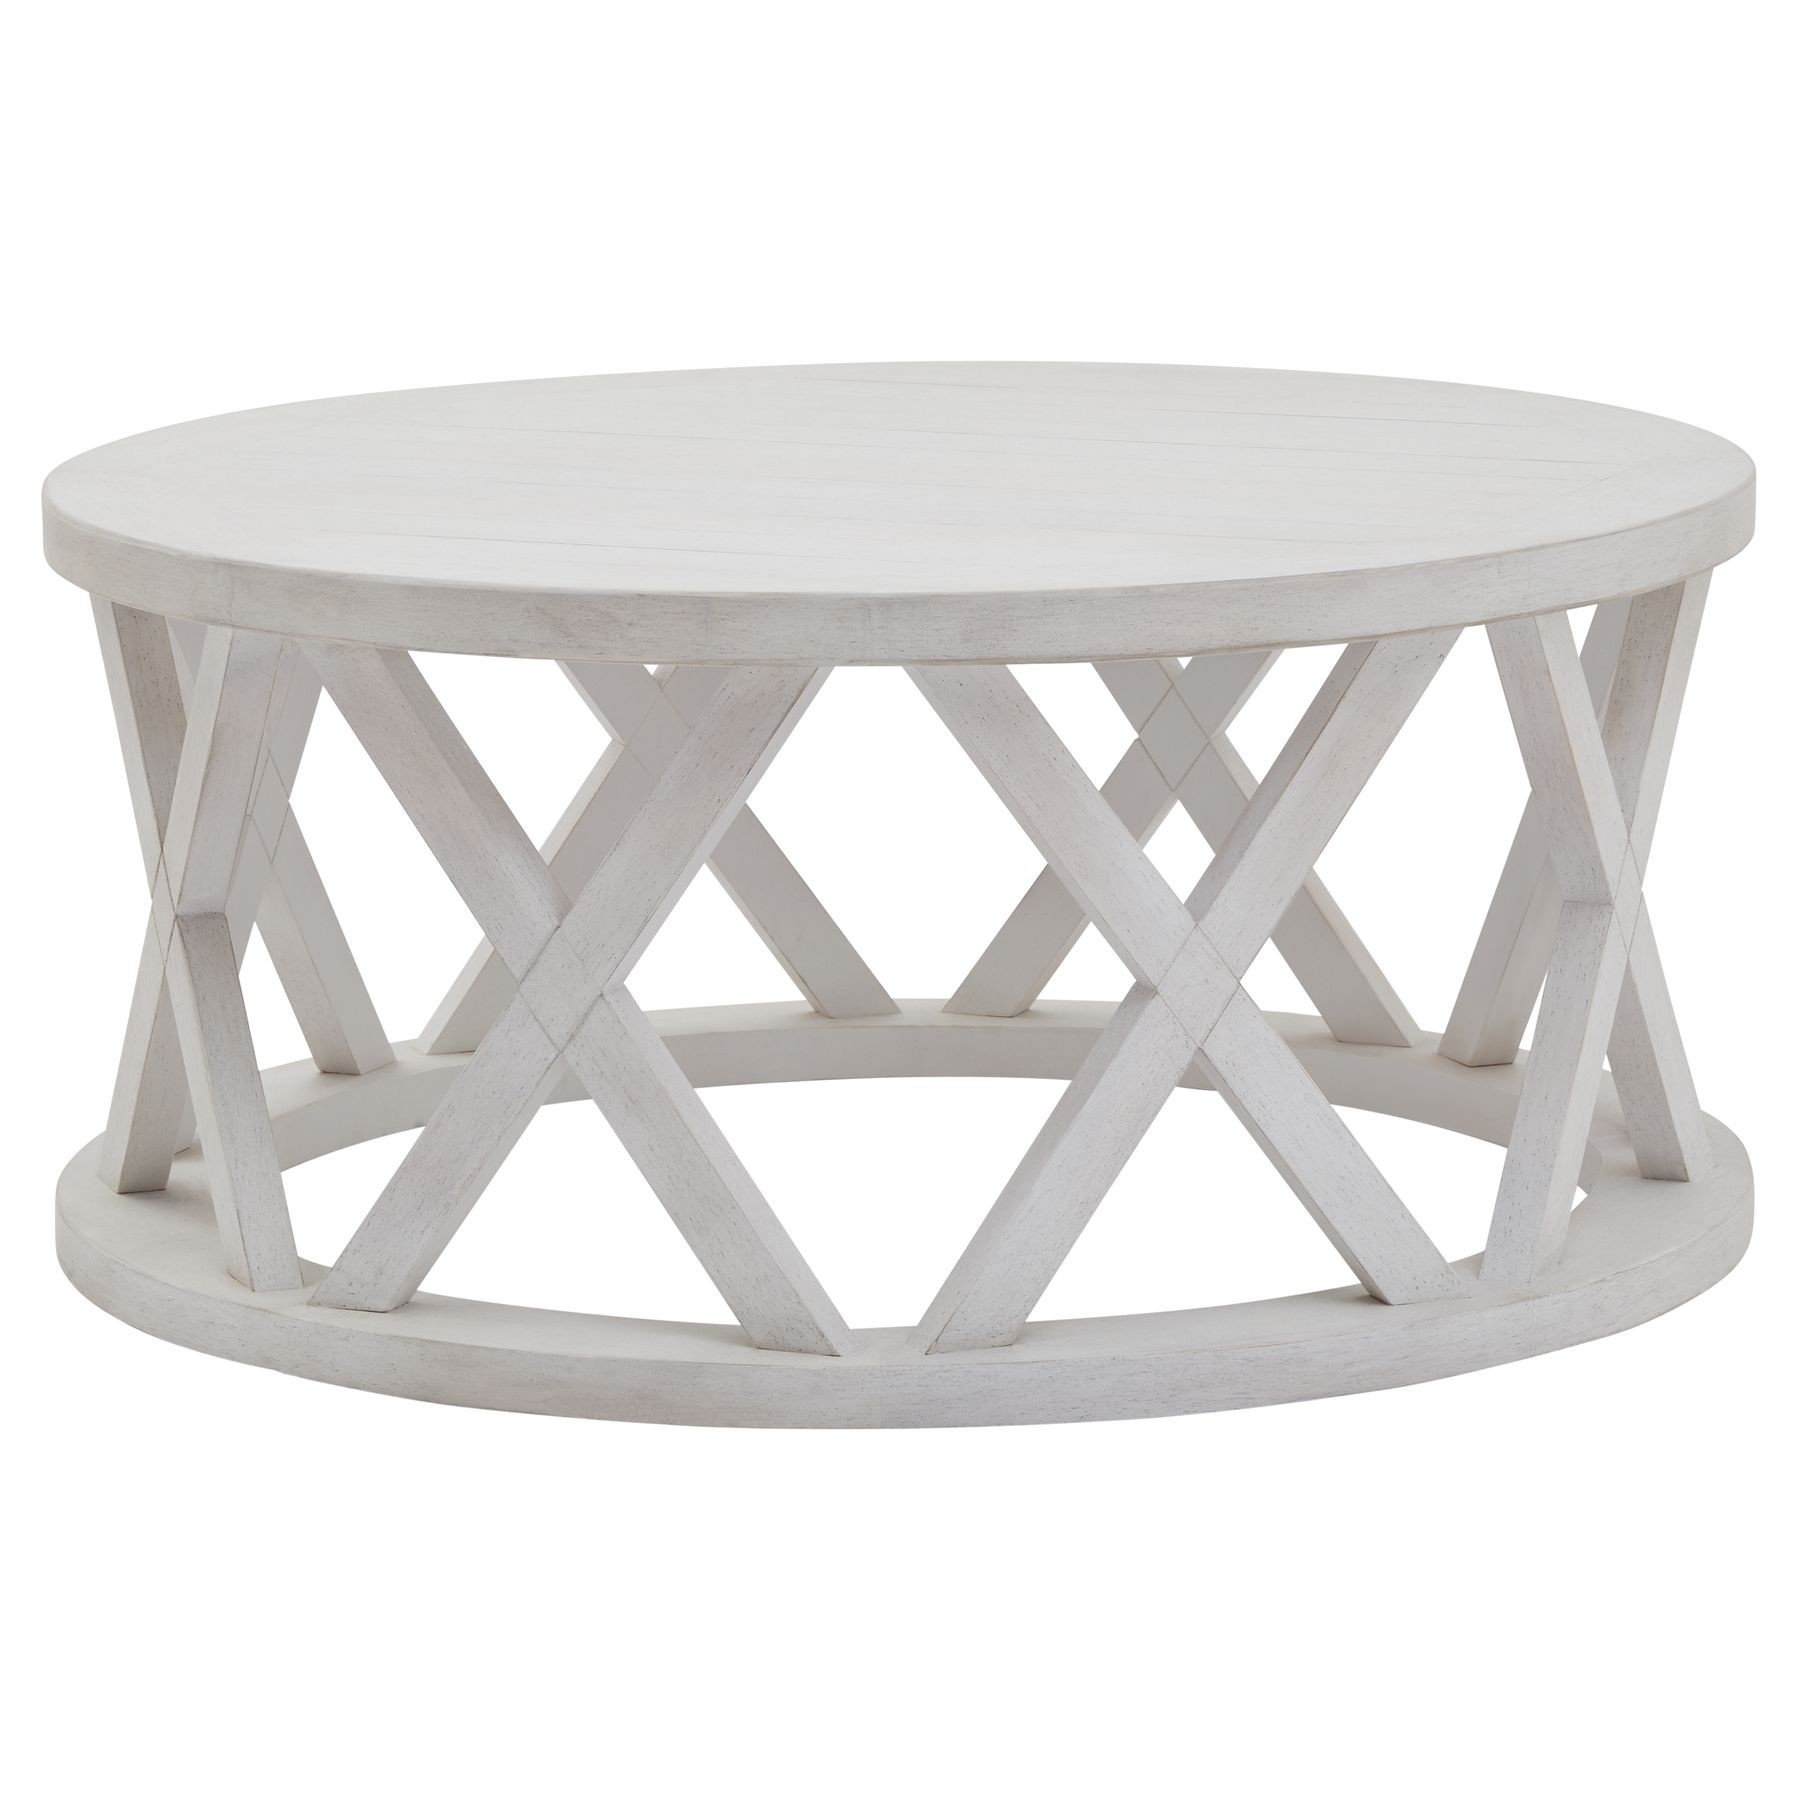 Estila Luxusný okrúhly konferenčný stolík Laticia Blanca s dekoratívnou konštrukciou vo vidieckom štýle bielej farby 100 cm